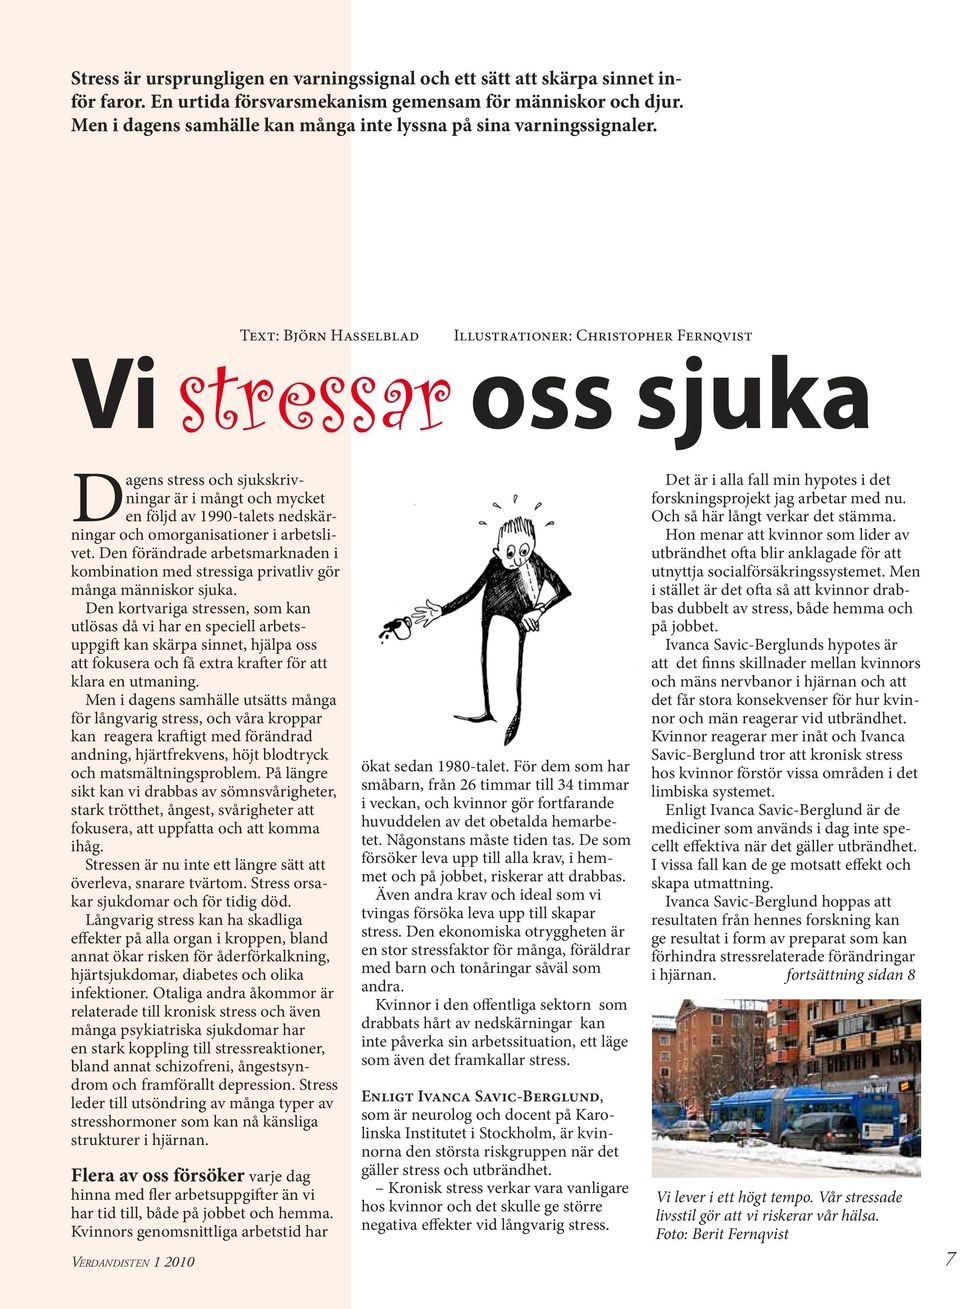 Text: Björn Hasselblad Vi stressar oss sjuka Illustrationer: Christopher Fernqvist Dagens stress och sjukskrivningar är i mångt och mycket en följd av 1990-talets nedskärningar och omorganisationer i